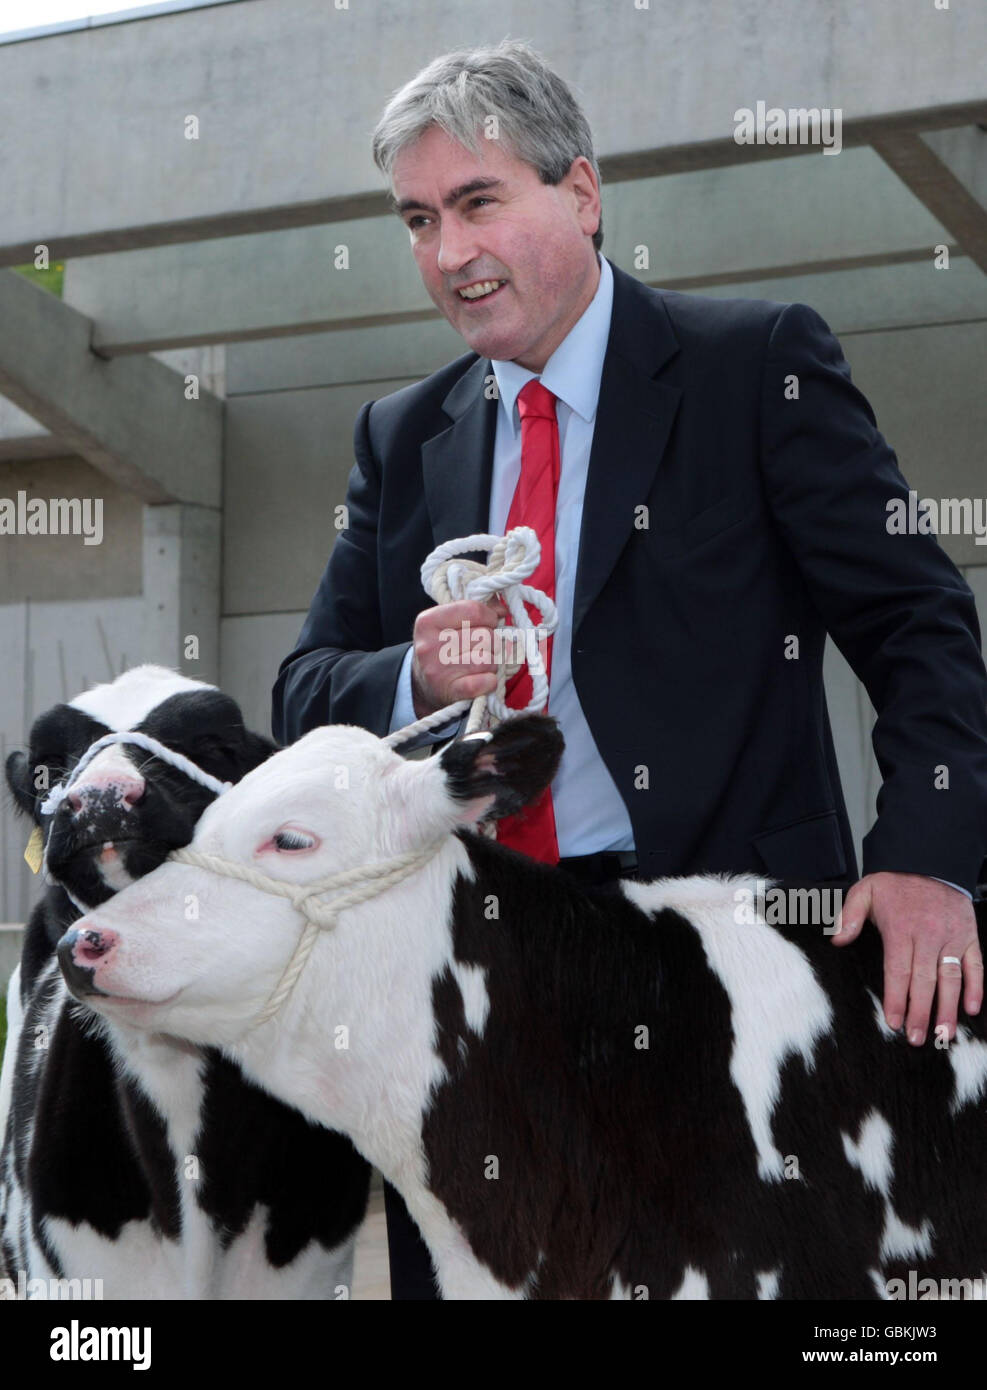 Le leader travailliste écossais Ian Gray rejoint les agriculteurs qui protestent contre la chute du prix du lait en dehors du Parlement écossais d'Édimbourg. Les prix ont chuté de 20% depuis le début de l'année, selon les leaders de l'industrie. Banque D'Images